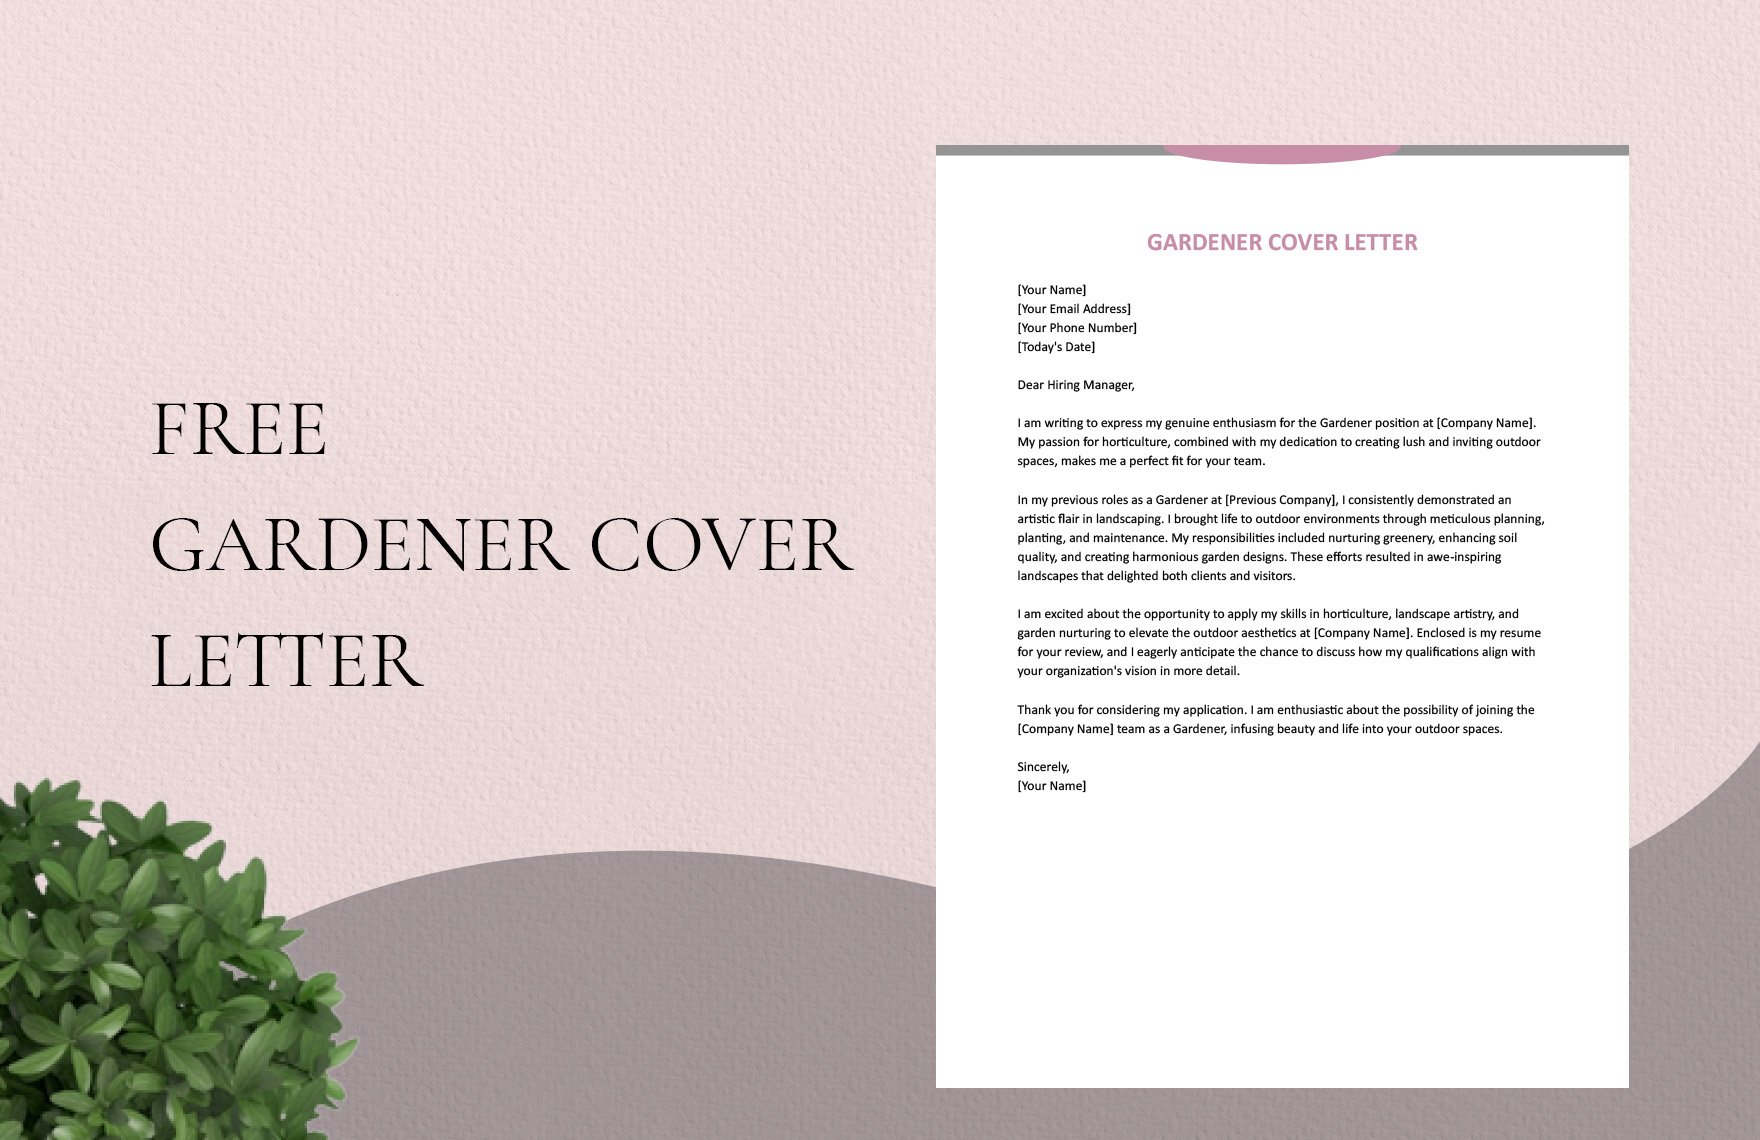 Gardener Cover Letter in Word